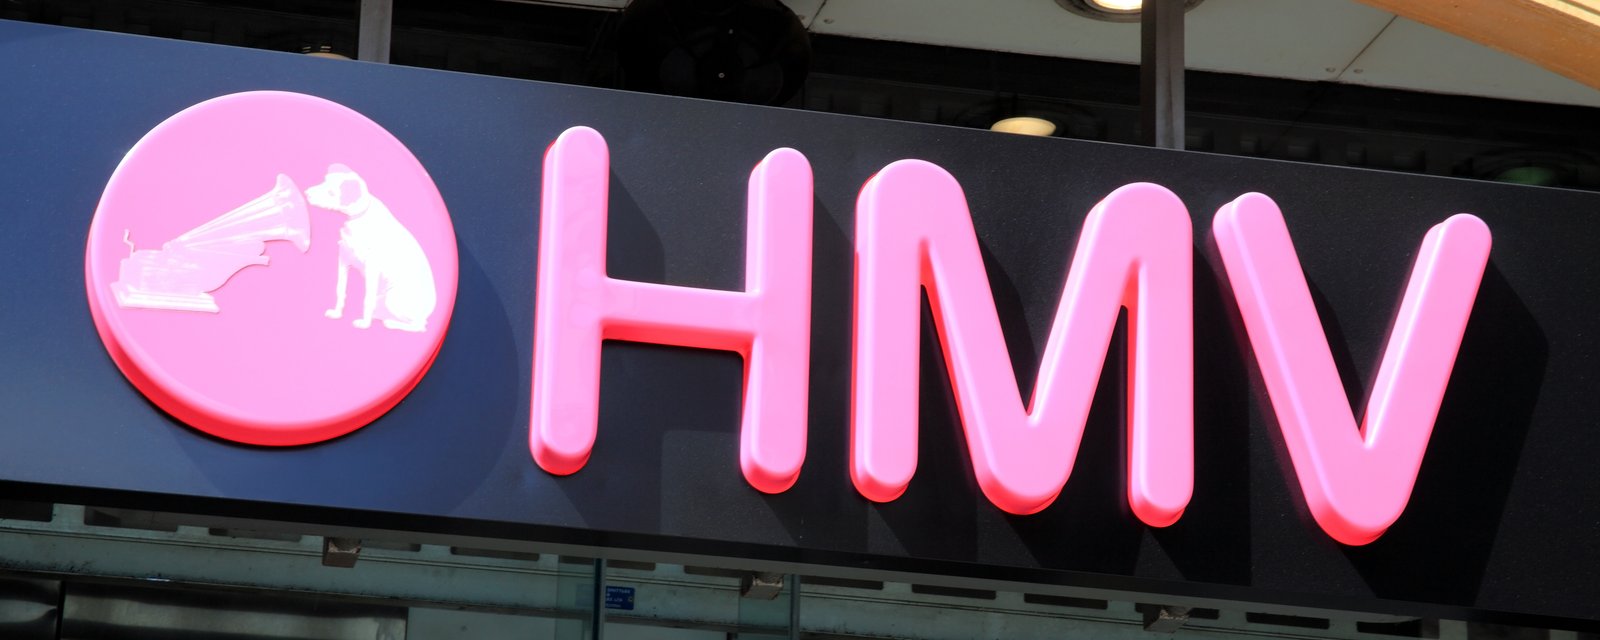 La chaîne HMV fait son grand retour au pays